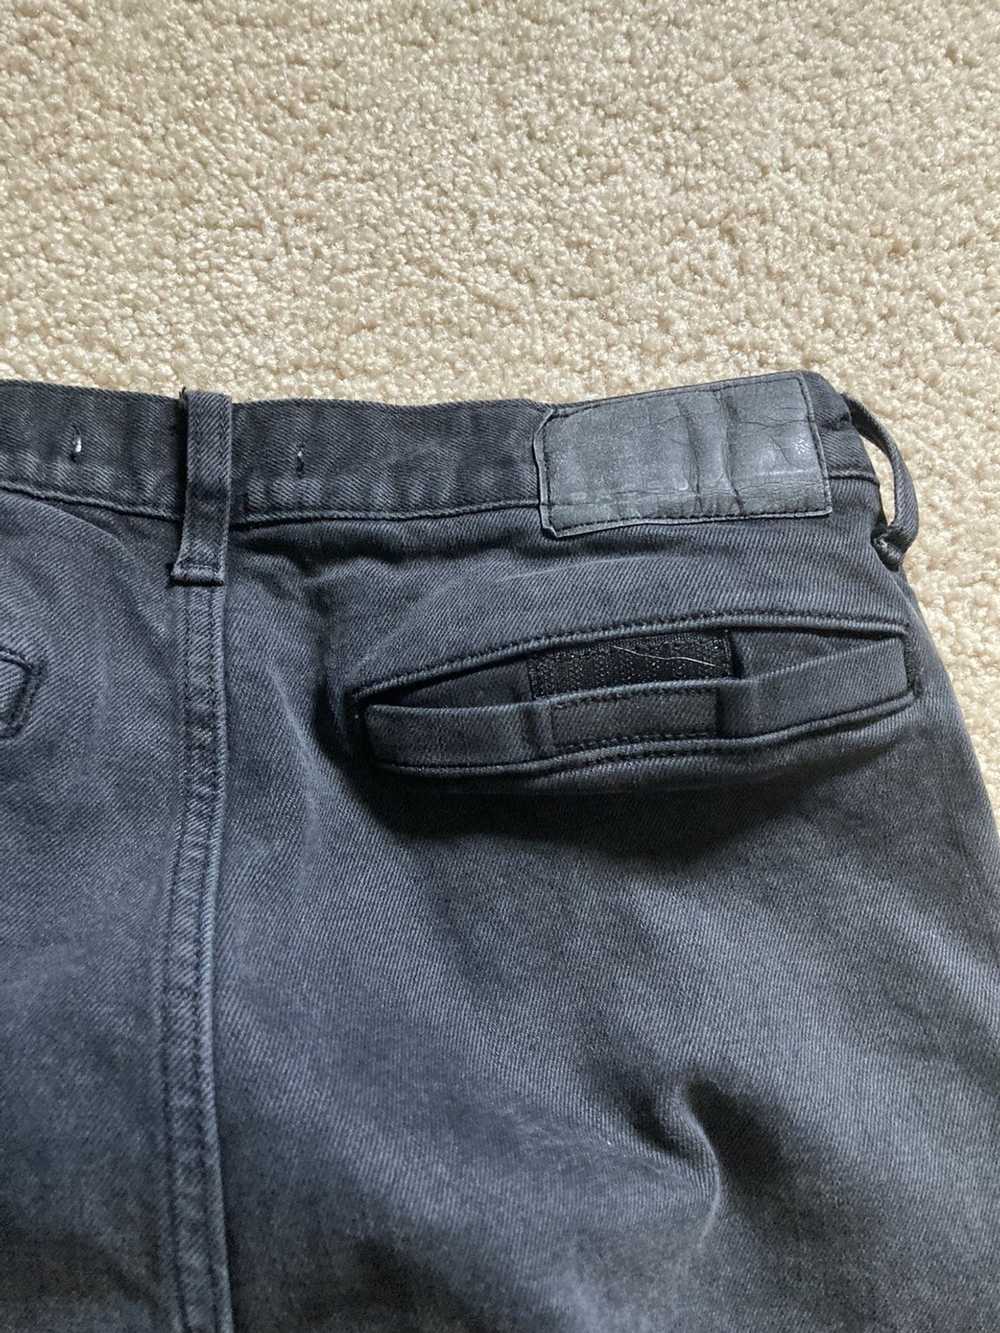 Pacsun × Vintage Black pacsun slim taper jeans - image 8